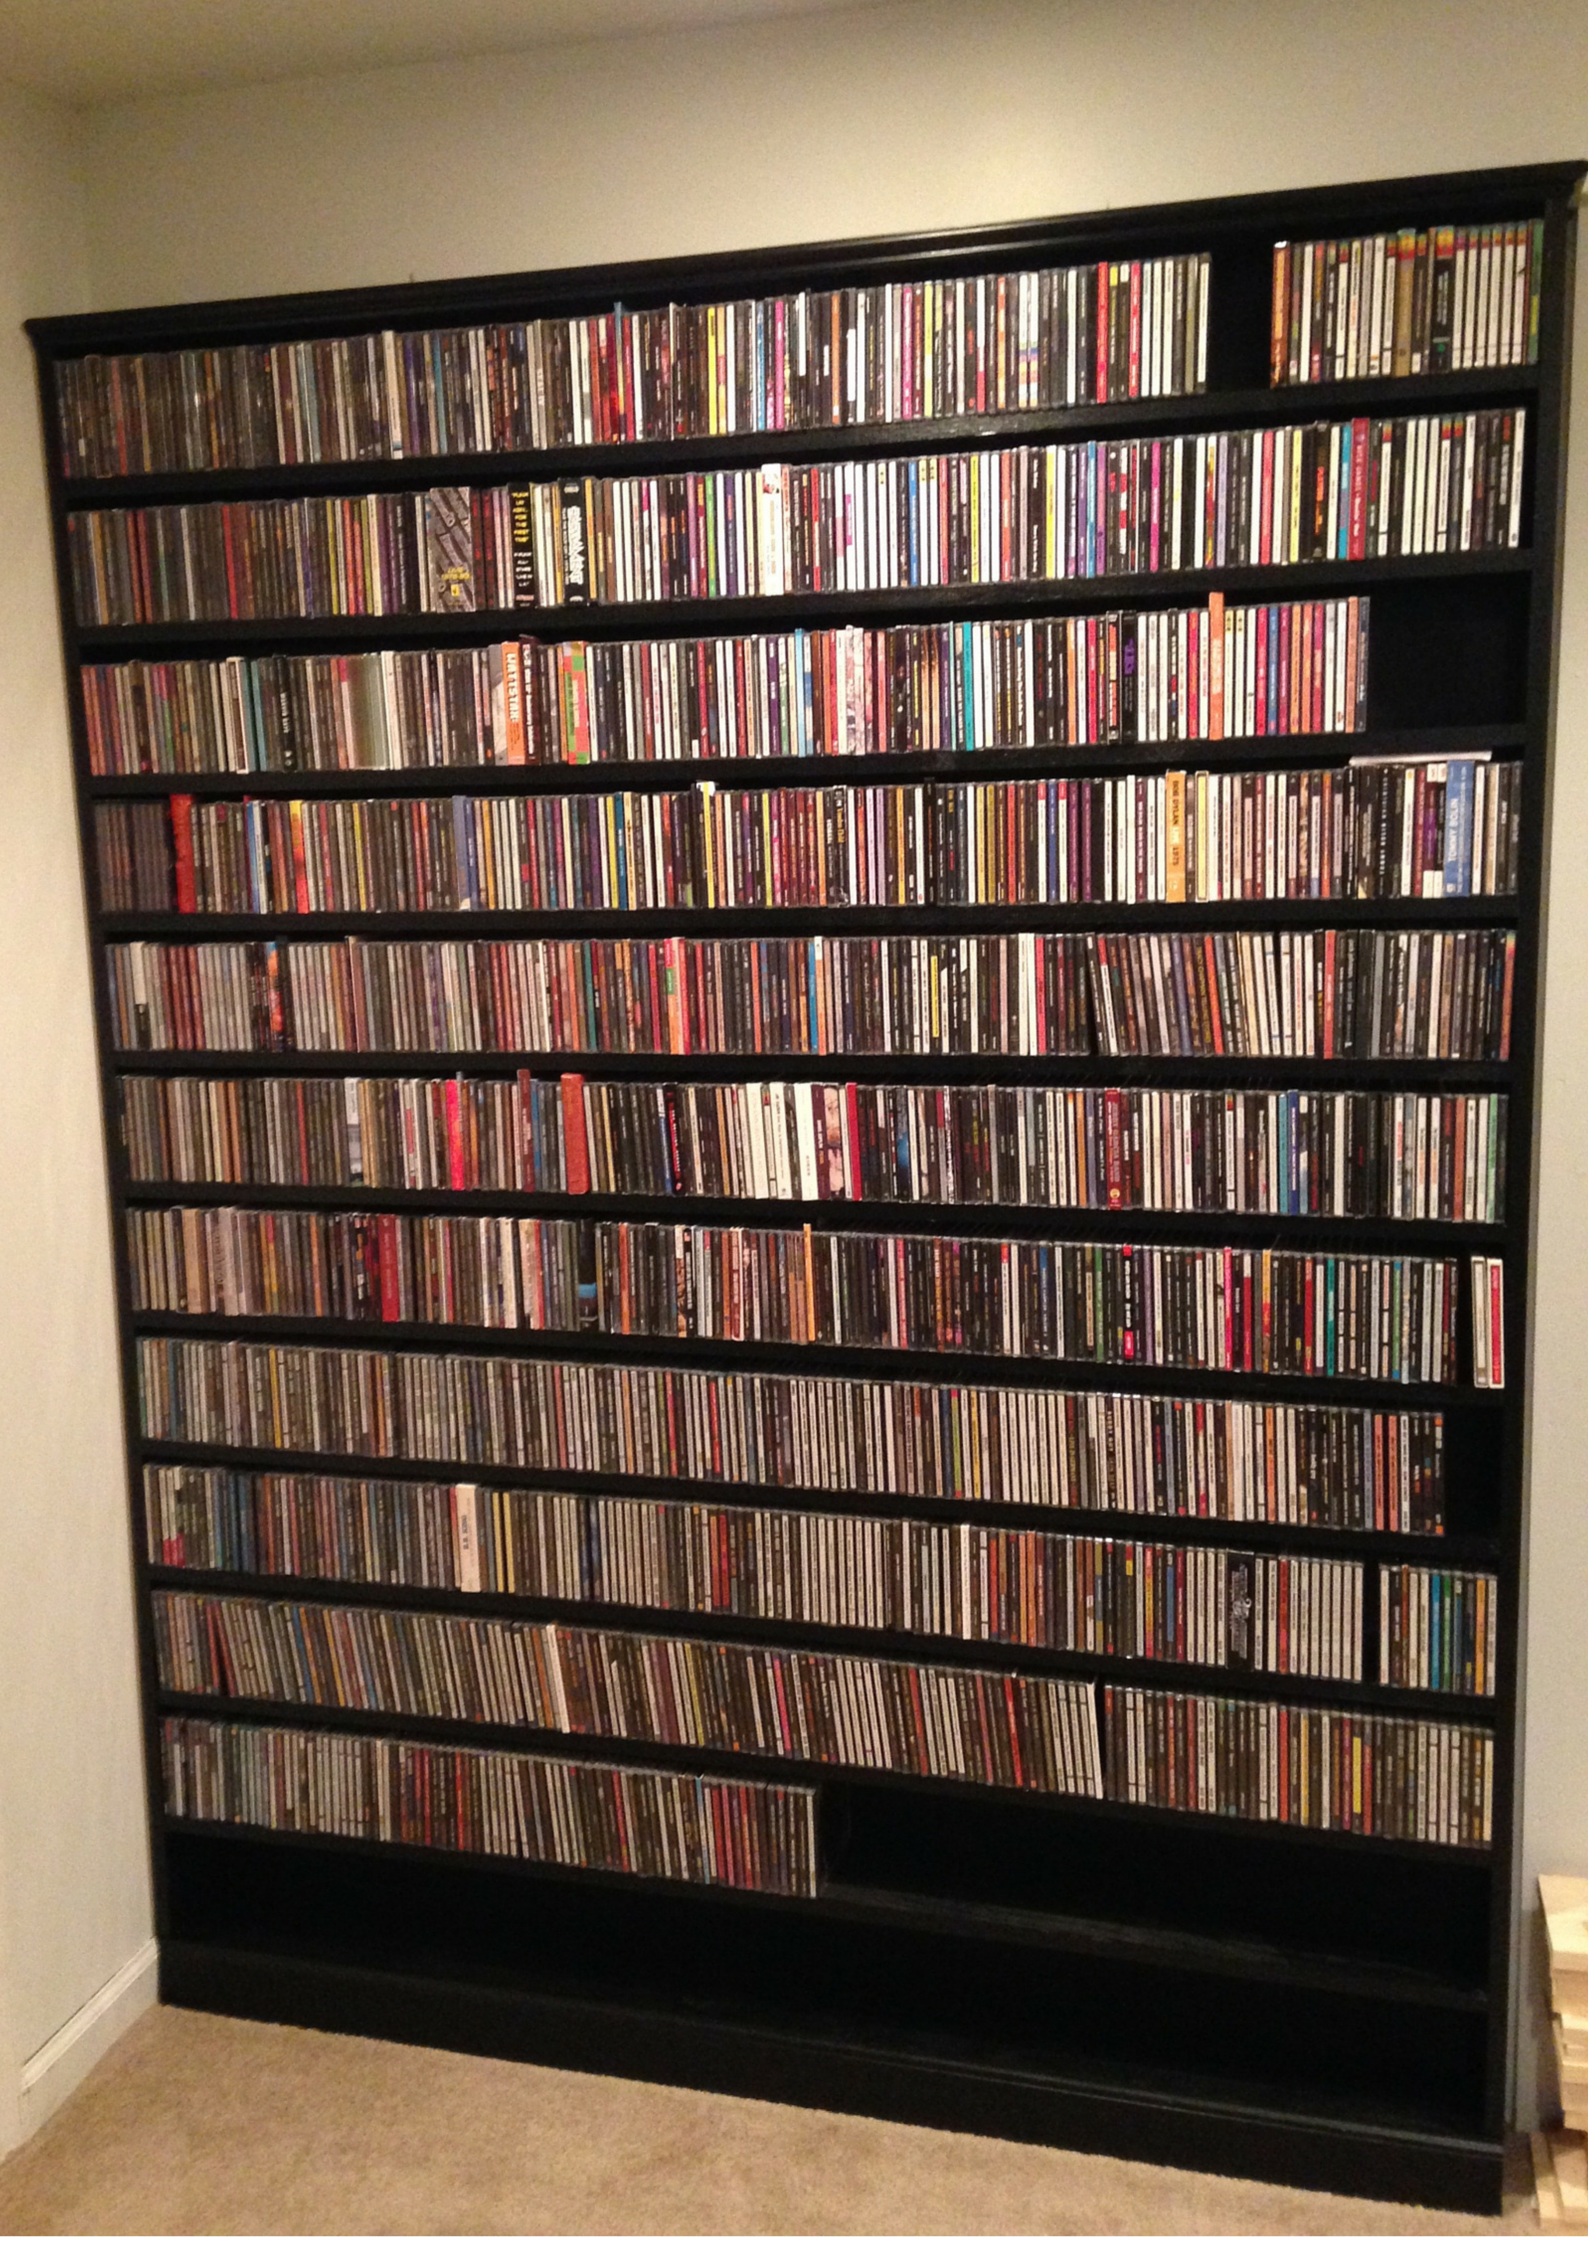 Extended Shelf Life: DIY CD Storage Shelves | Cd shelving, Cd ...